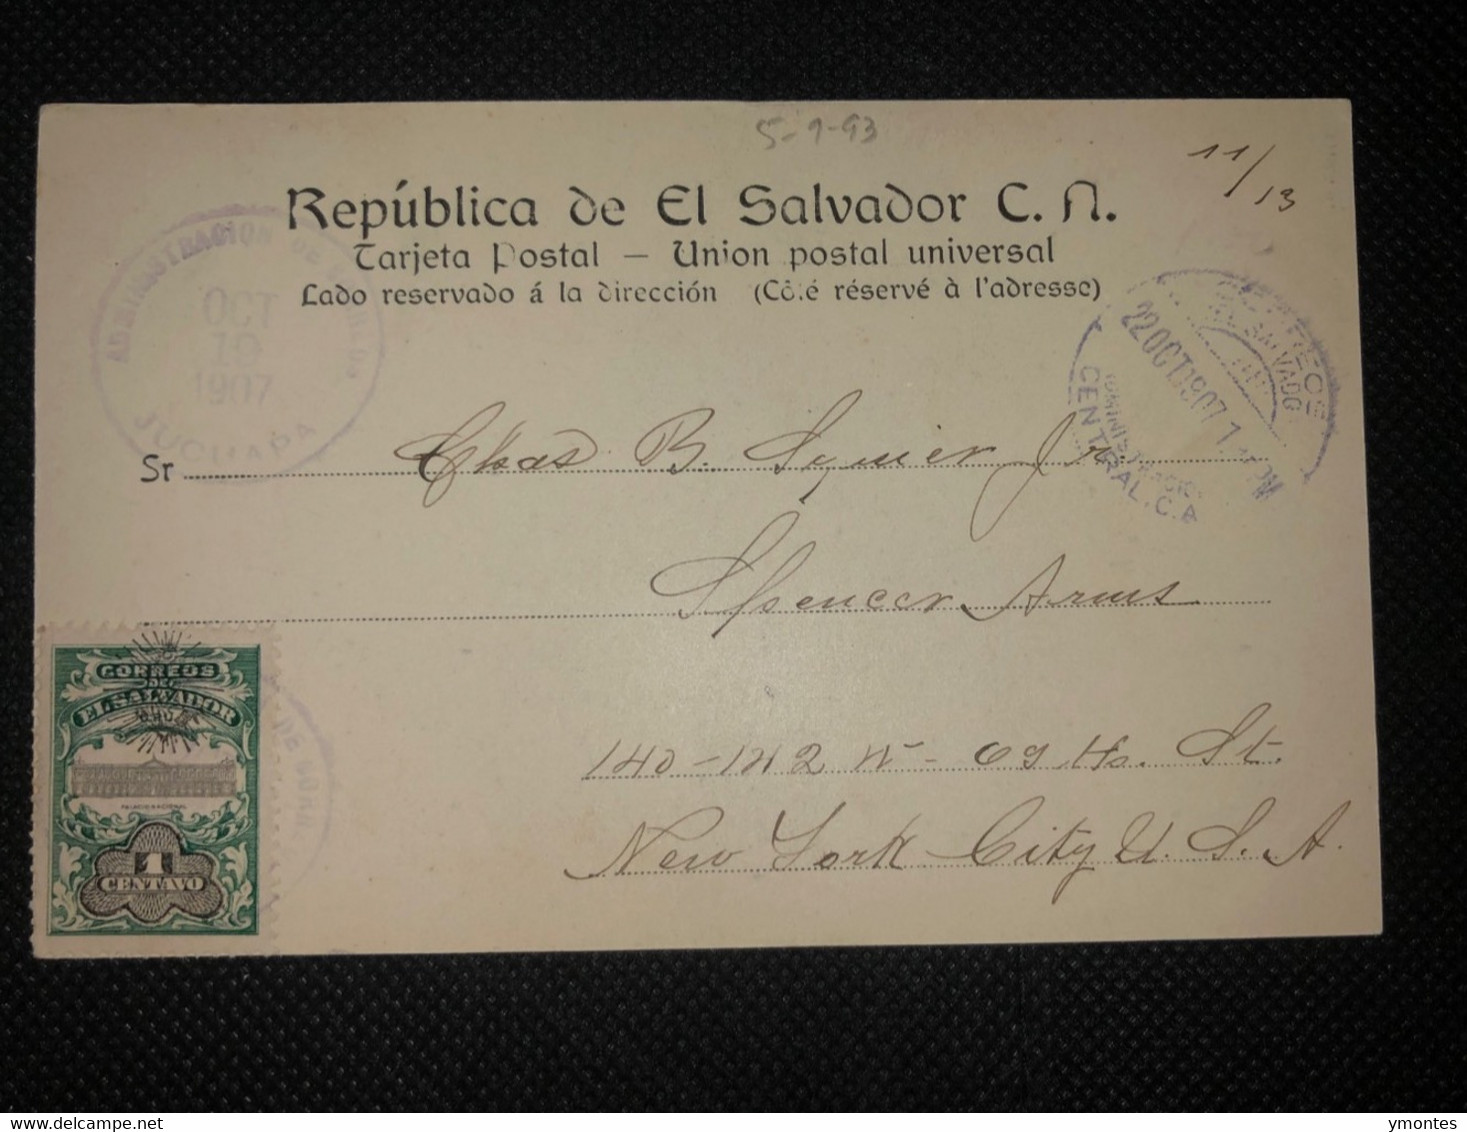 Postcard Penitenciaria San Salvador 1907 - El Salvador